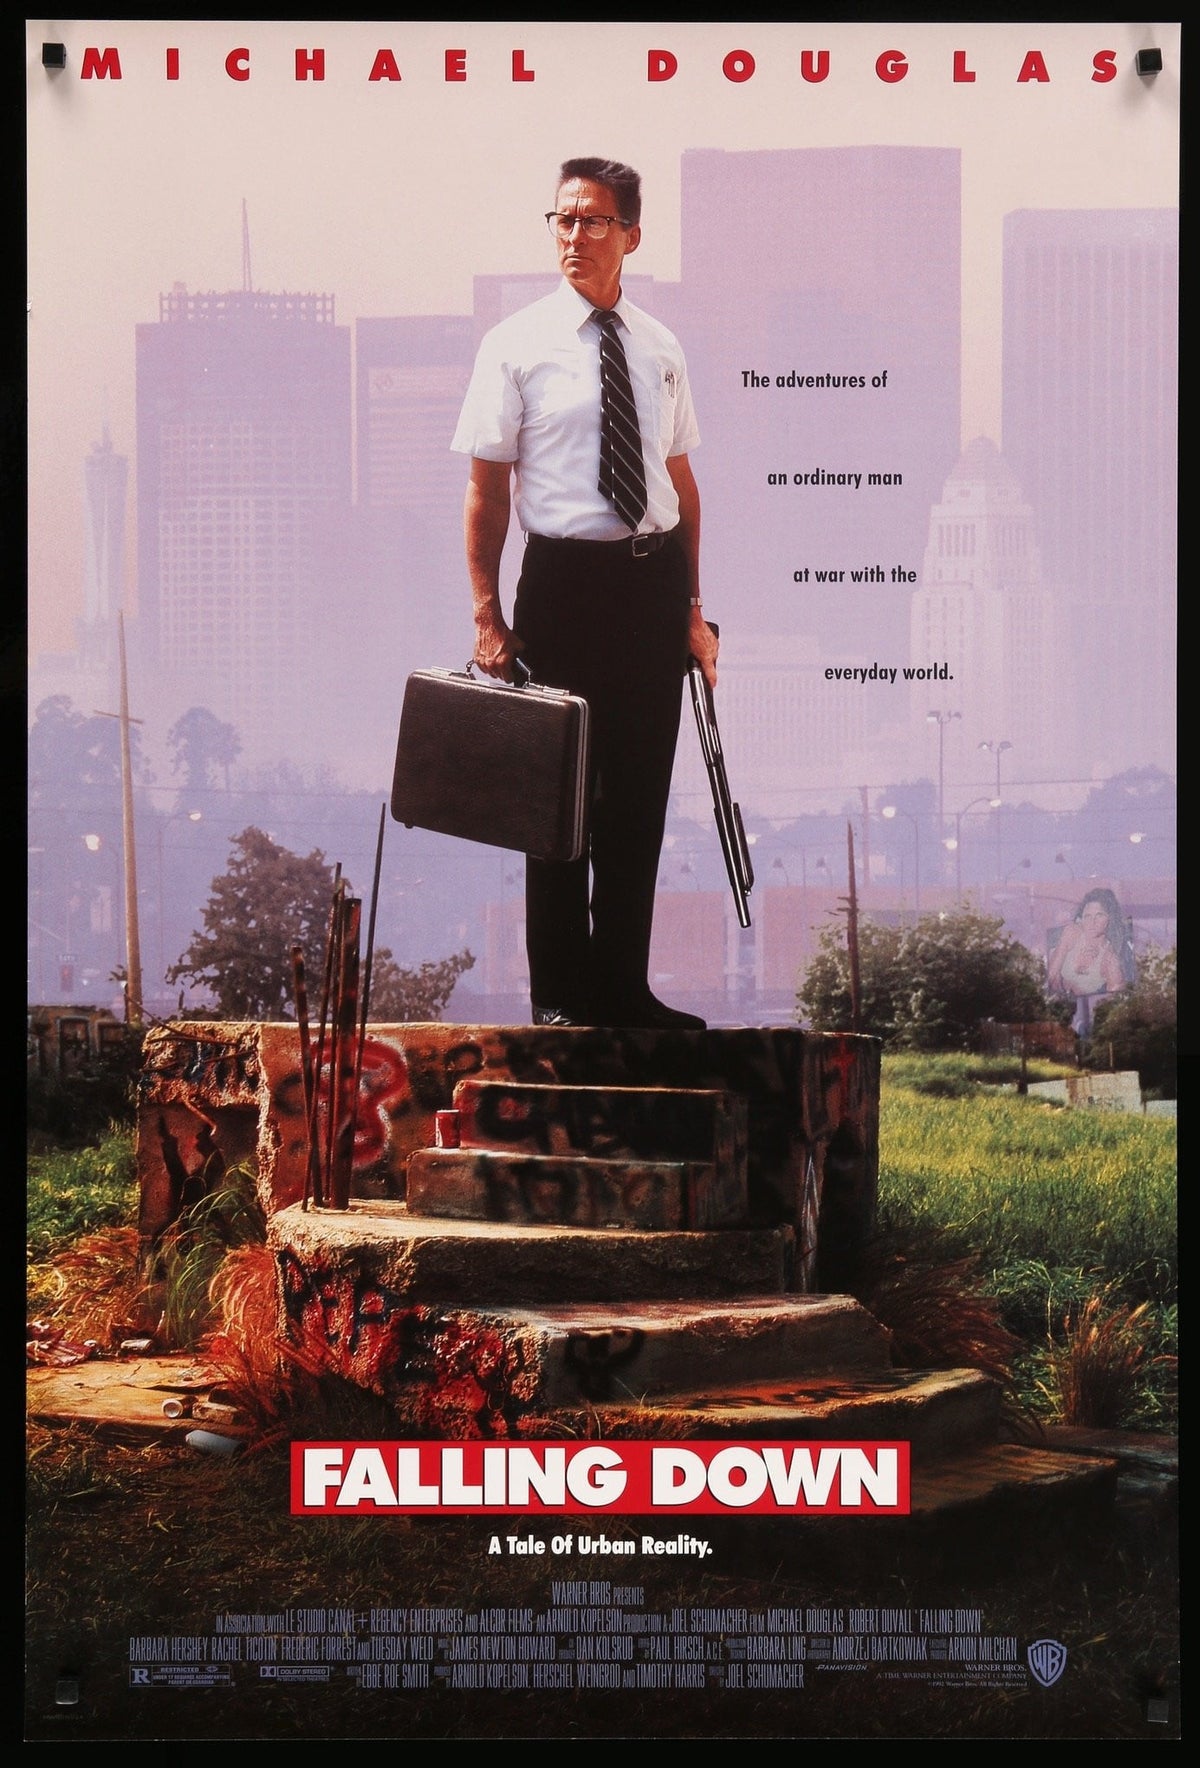 Falling Down (1993) original movie poster for sale at Original Film Art